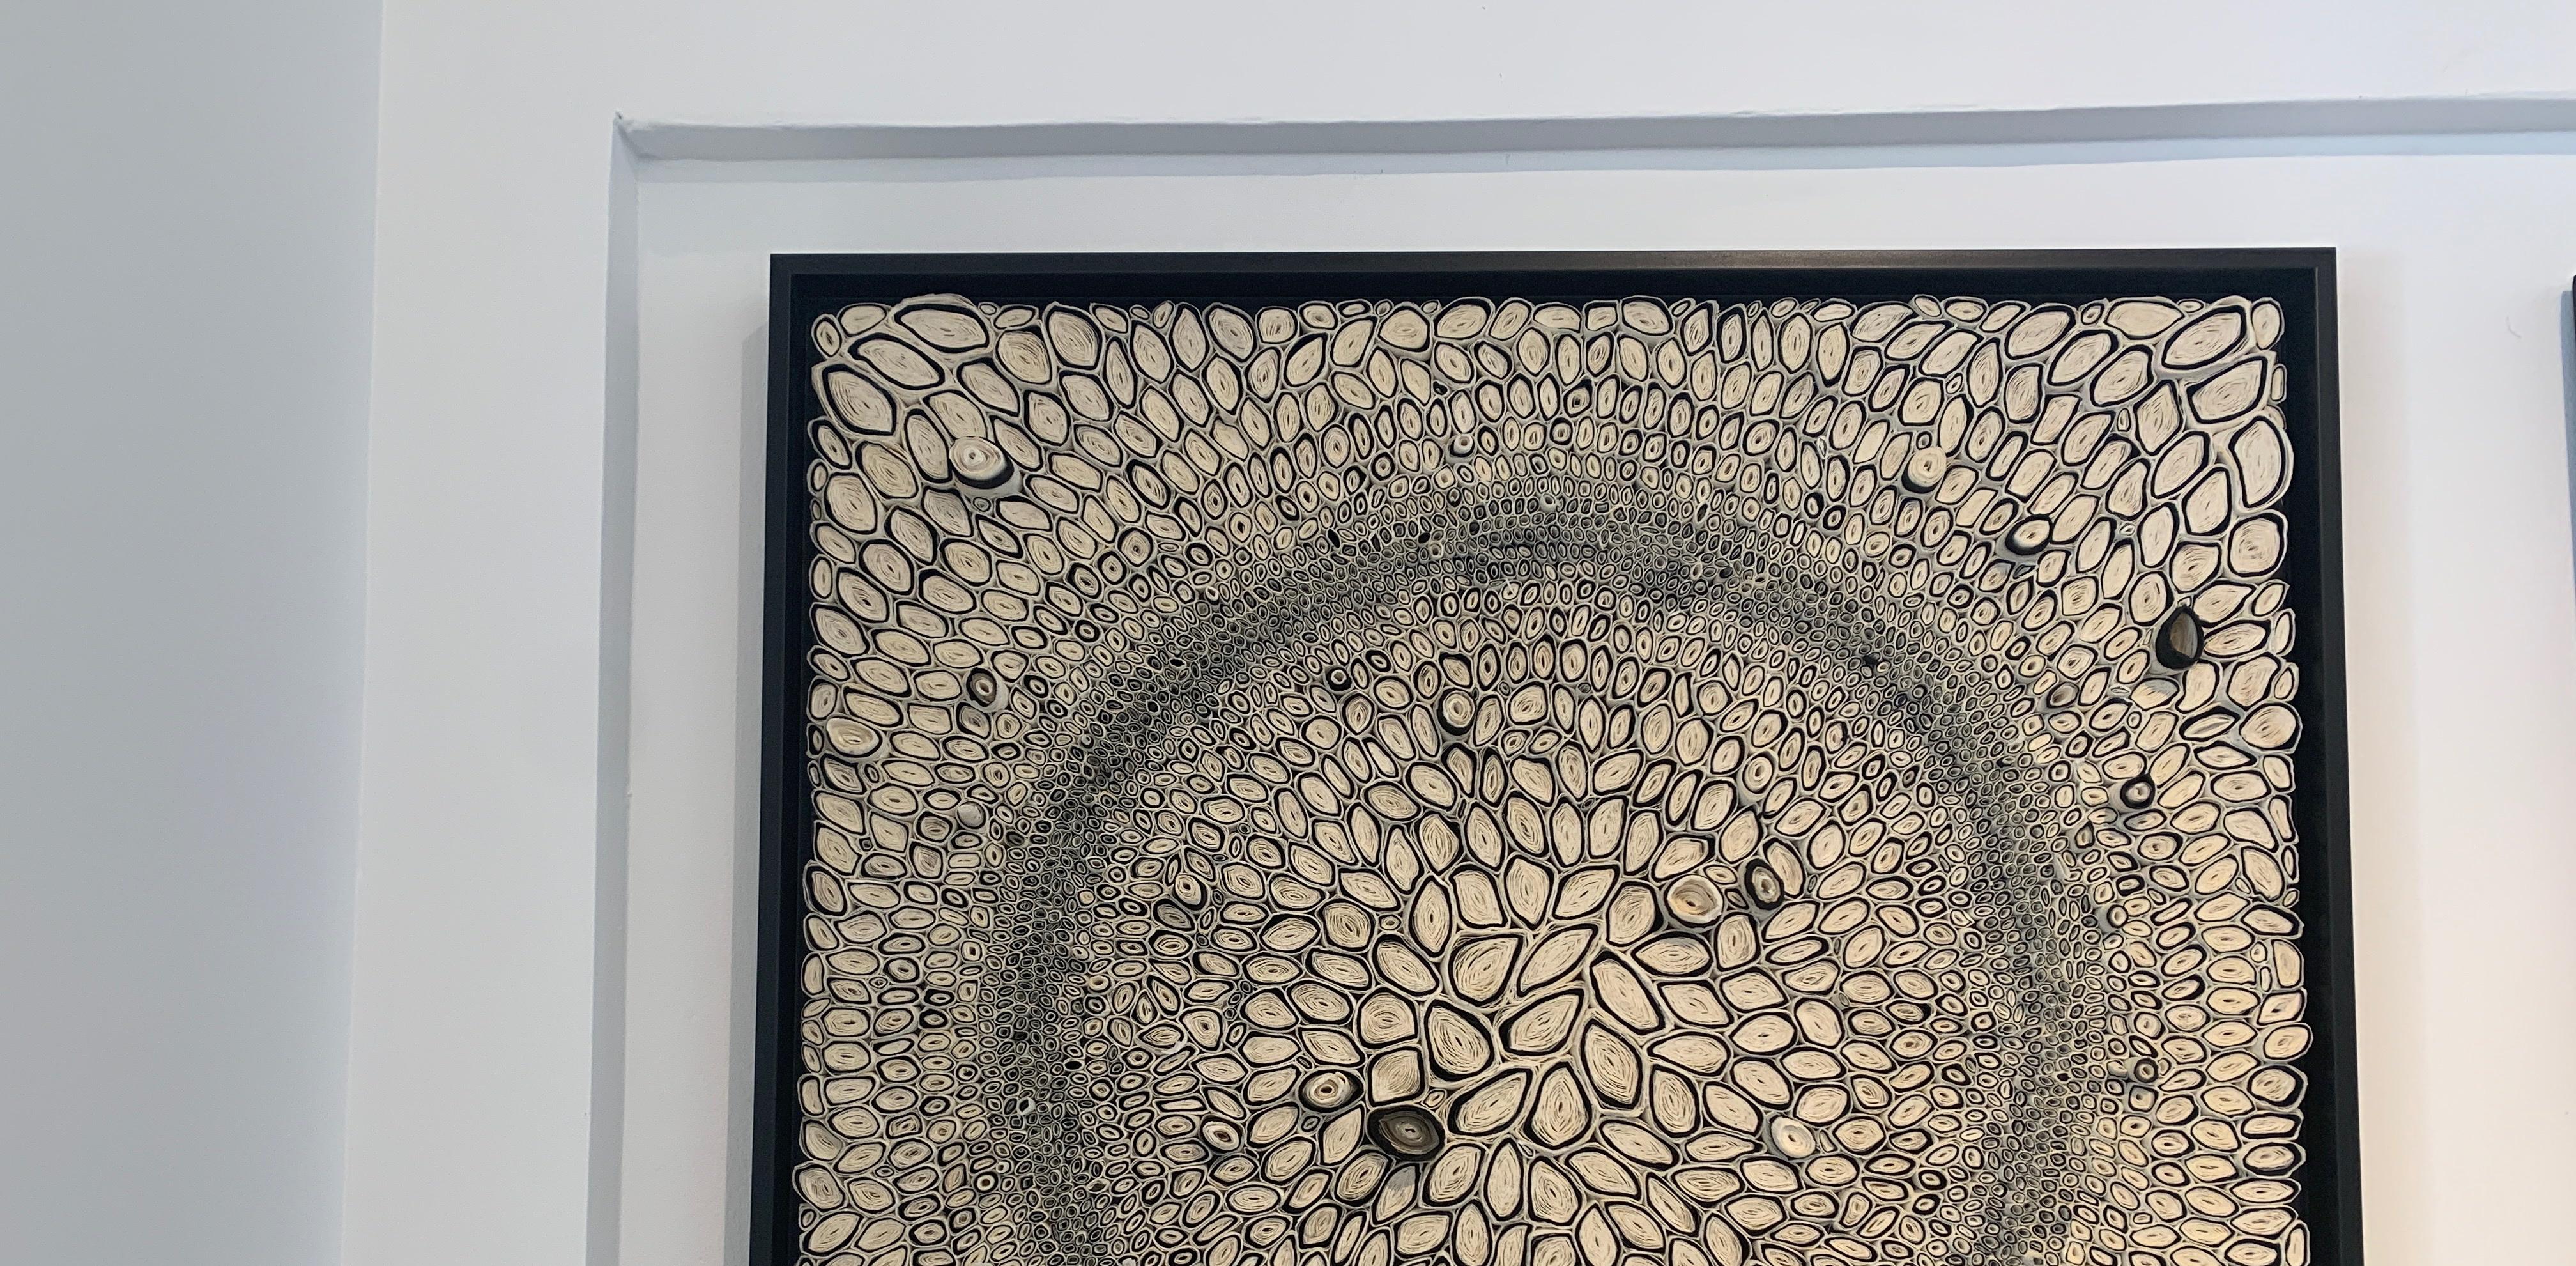 Ces pièces en papier tridimensionnel noir et blanc sont l'œuvre d'Amy Genser. Ces  les pièces murales texturées, uniques en leur genre, incarnent le mouvement et les processus. Elle manipule magistralement le papier - chaque pièce étant coupée,